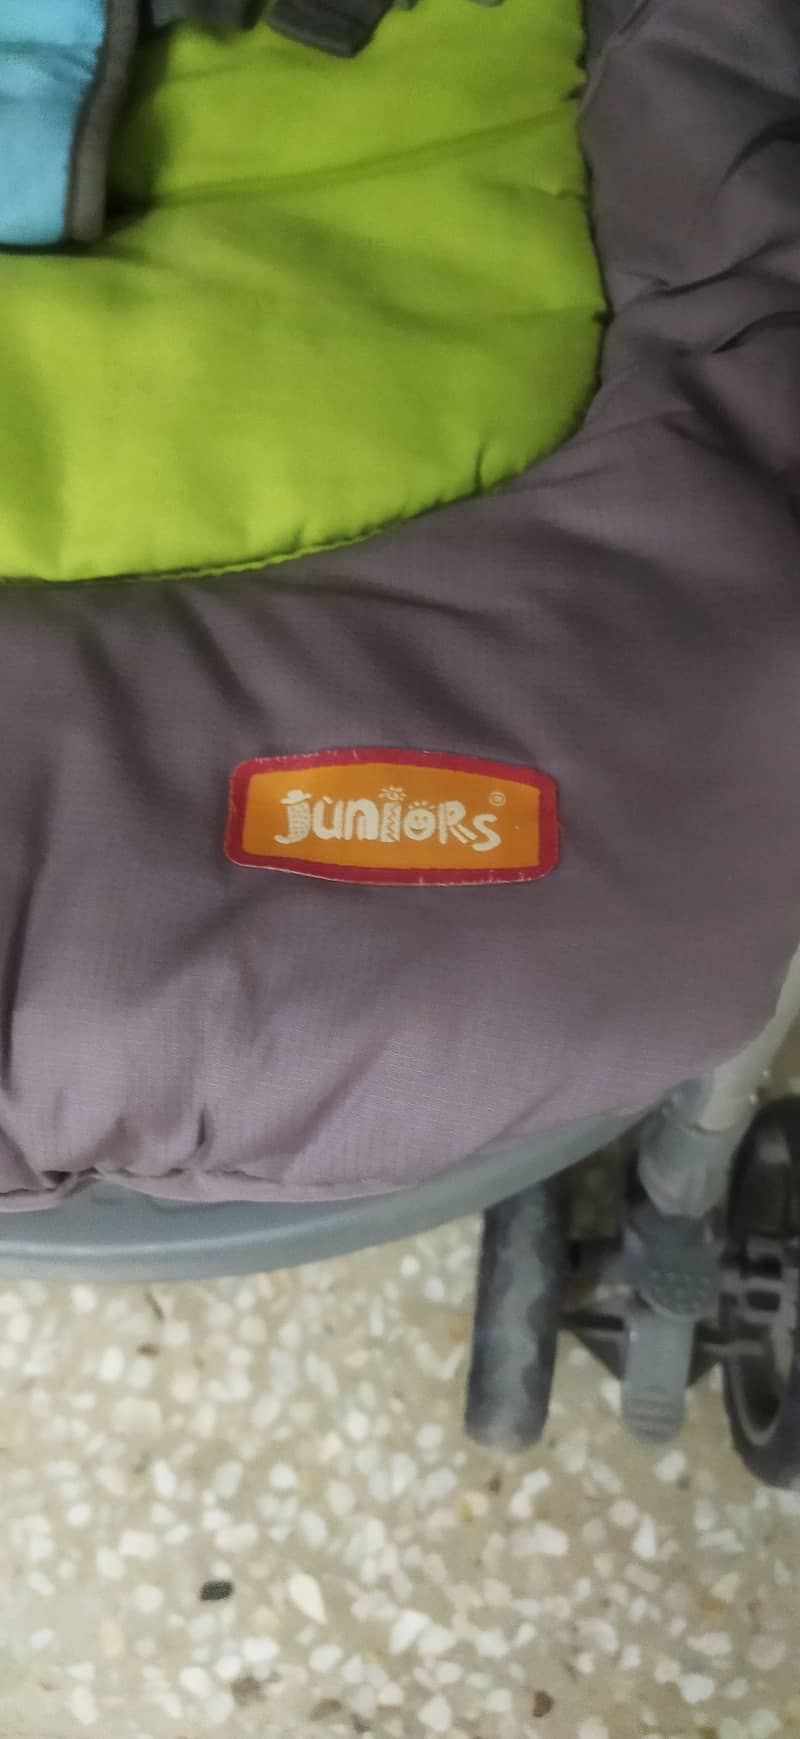 Junior's Brand imported baby stroller / pram 1